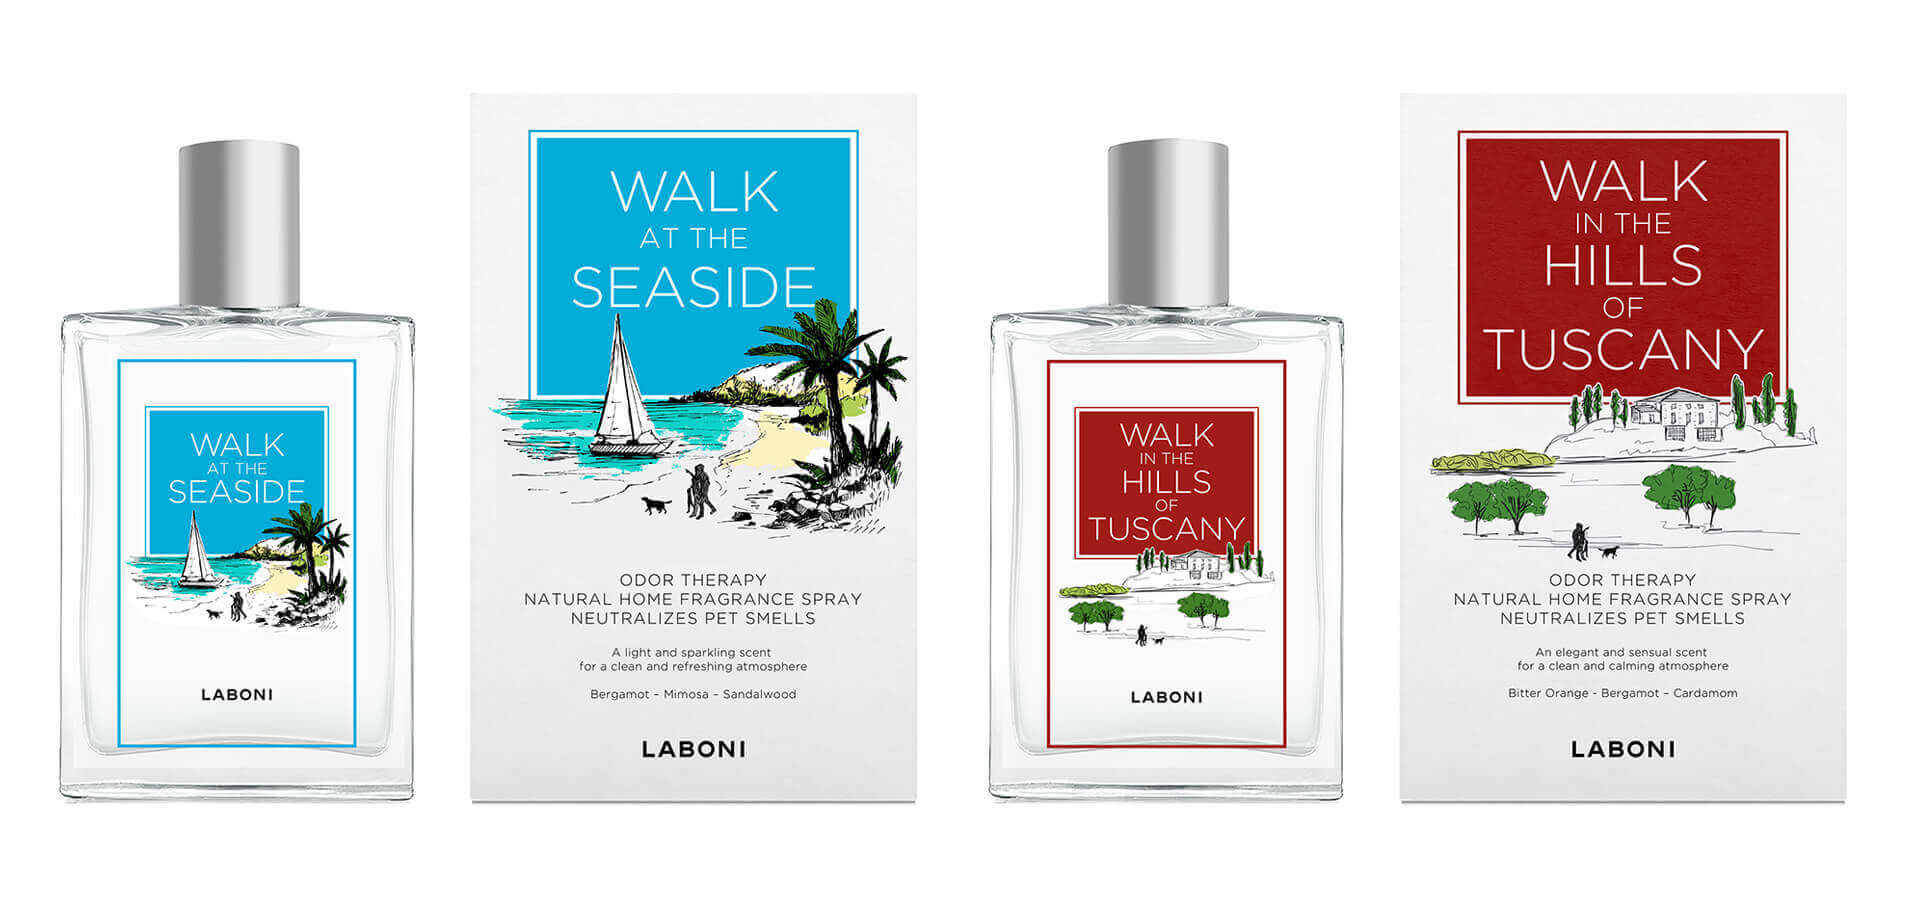 Etiketten / Verpackungsdesign / packaging design für Laboni Odor therapy